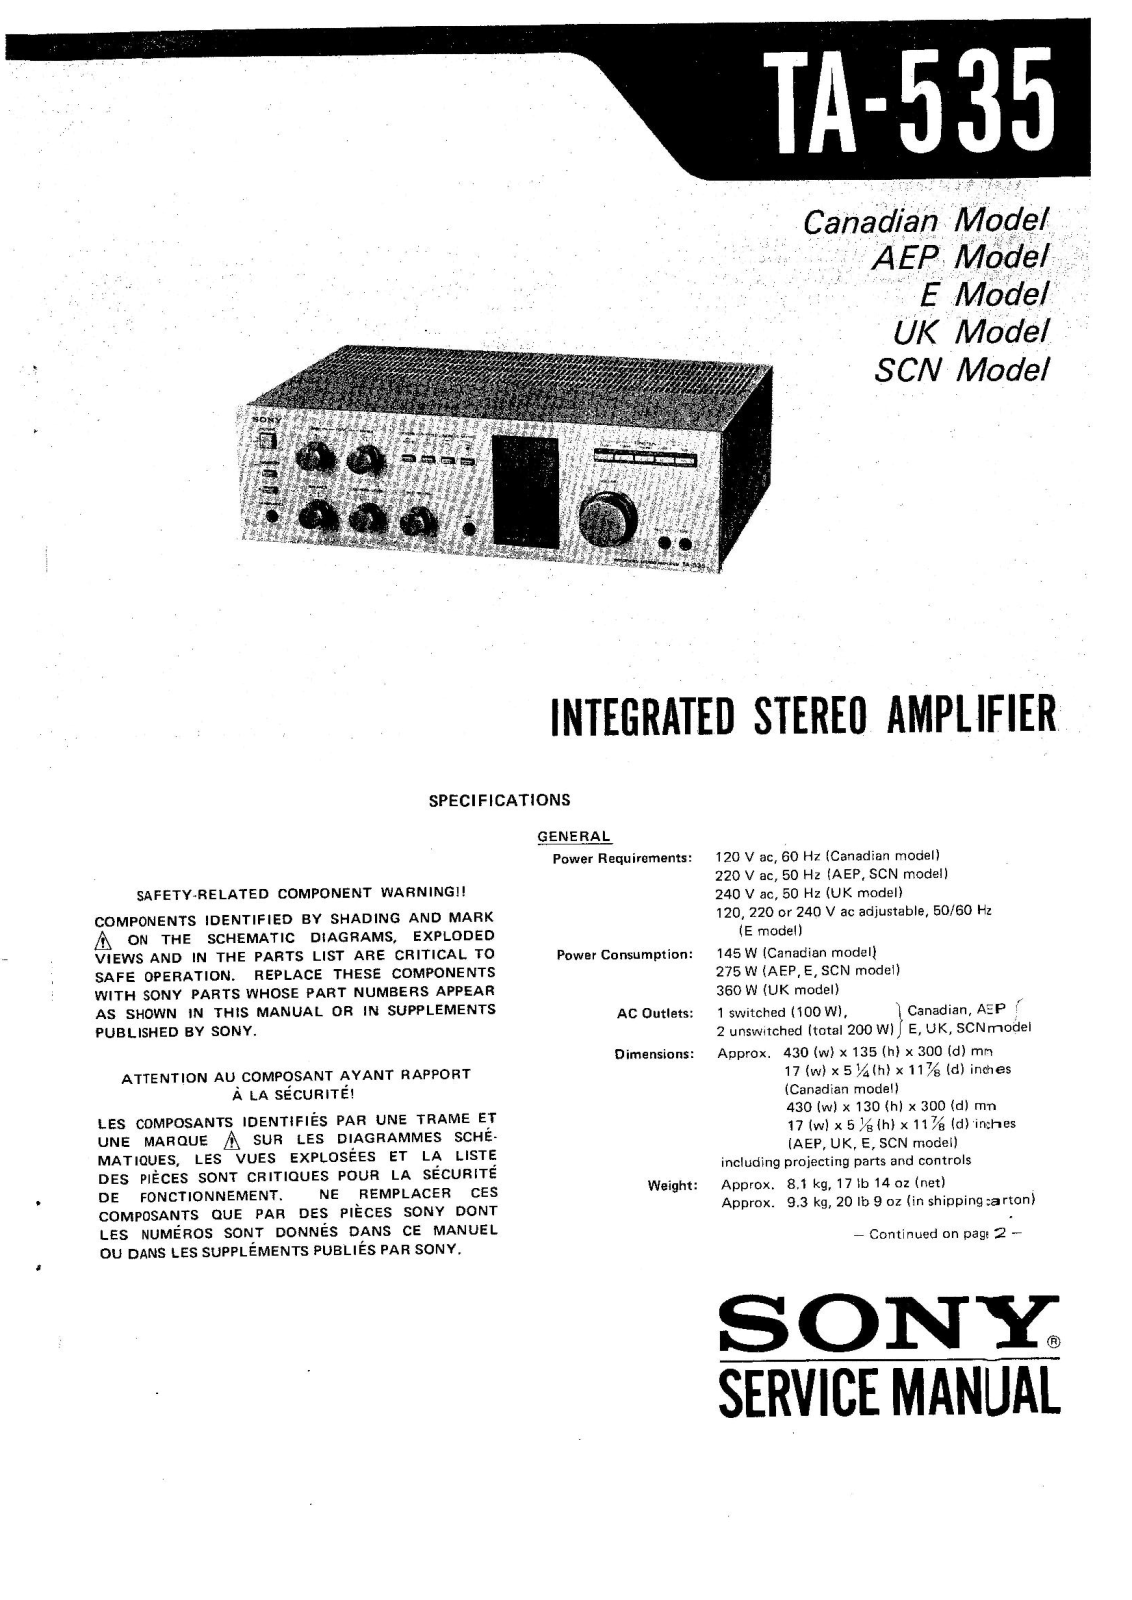 Sony TA-535 Service manual